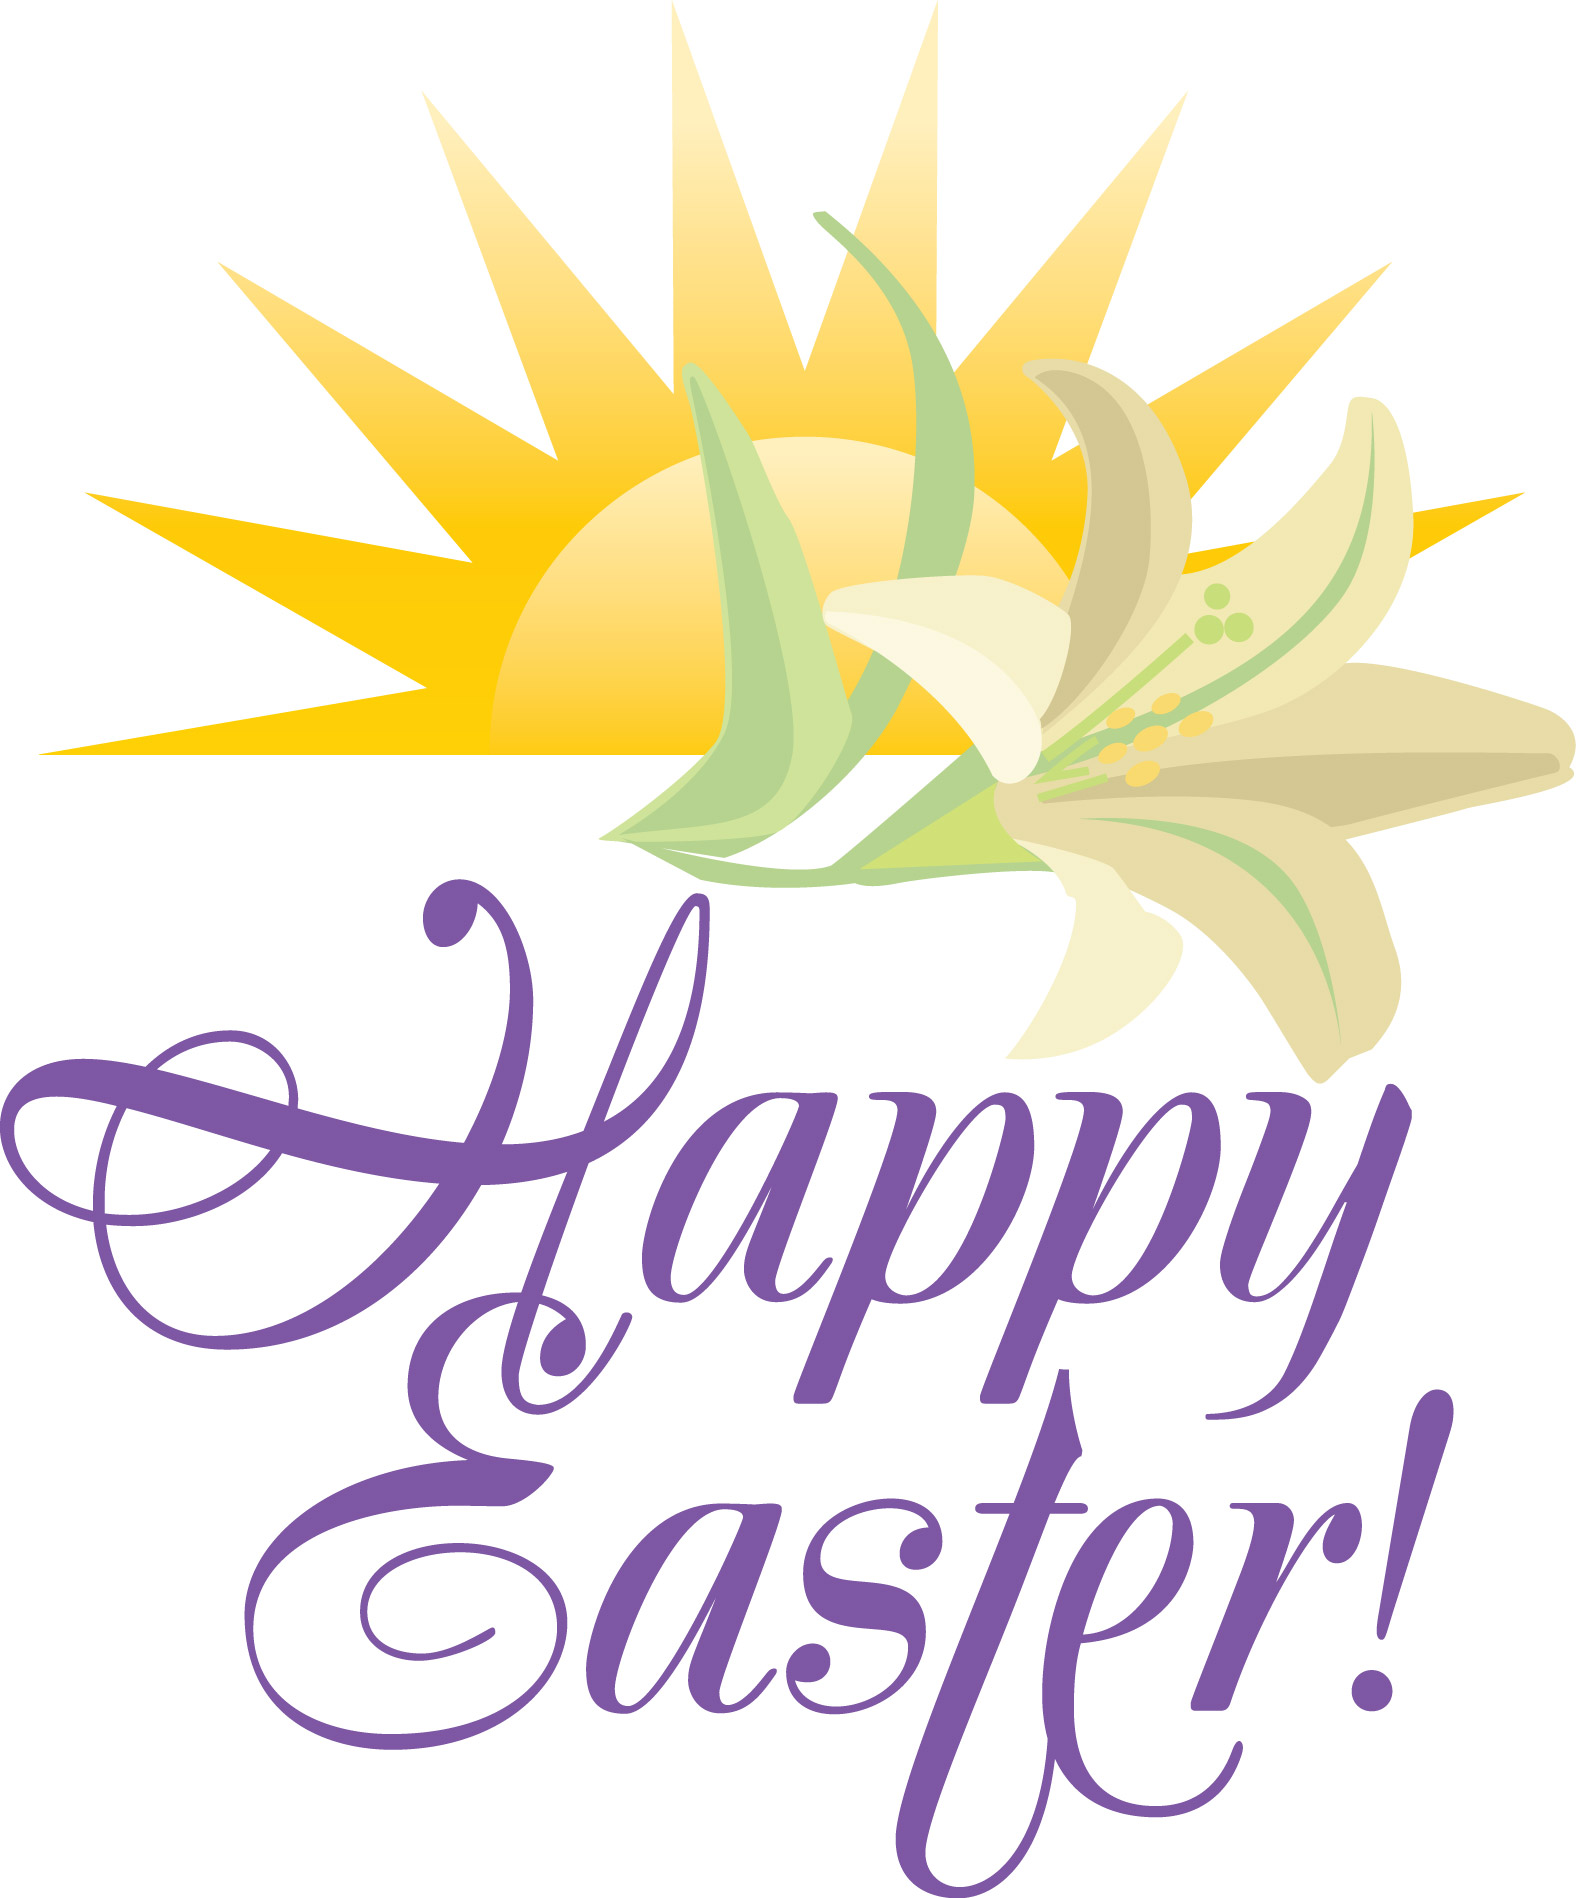 Christian Easter Clip Art, Image Of Easter